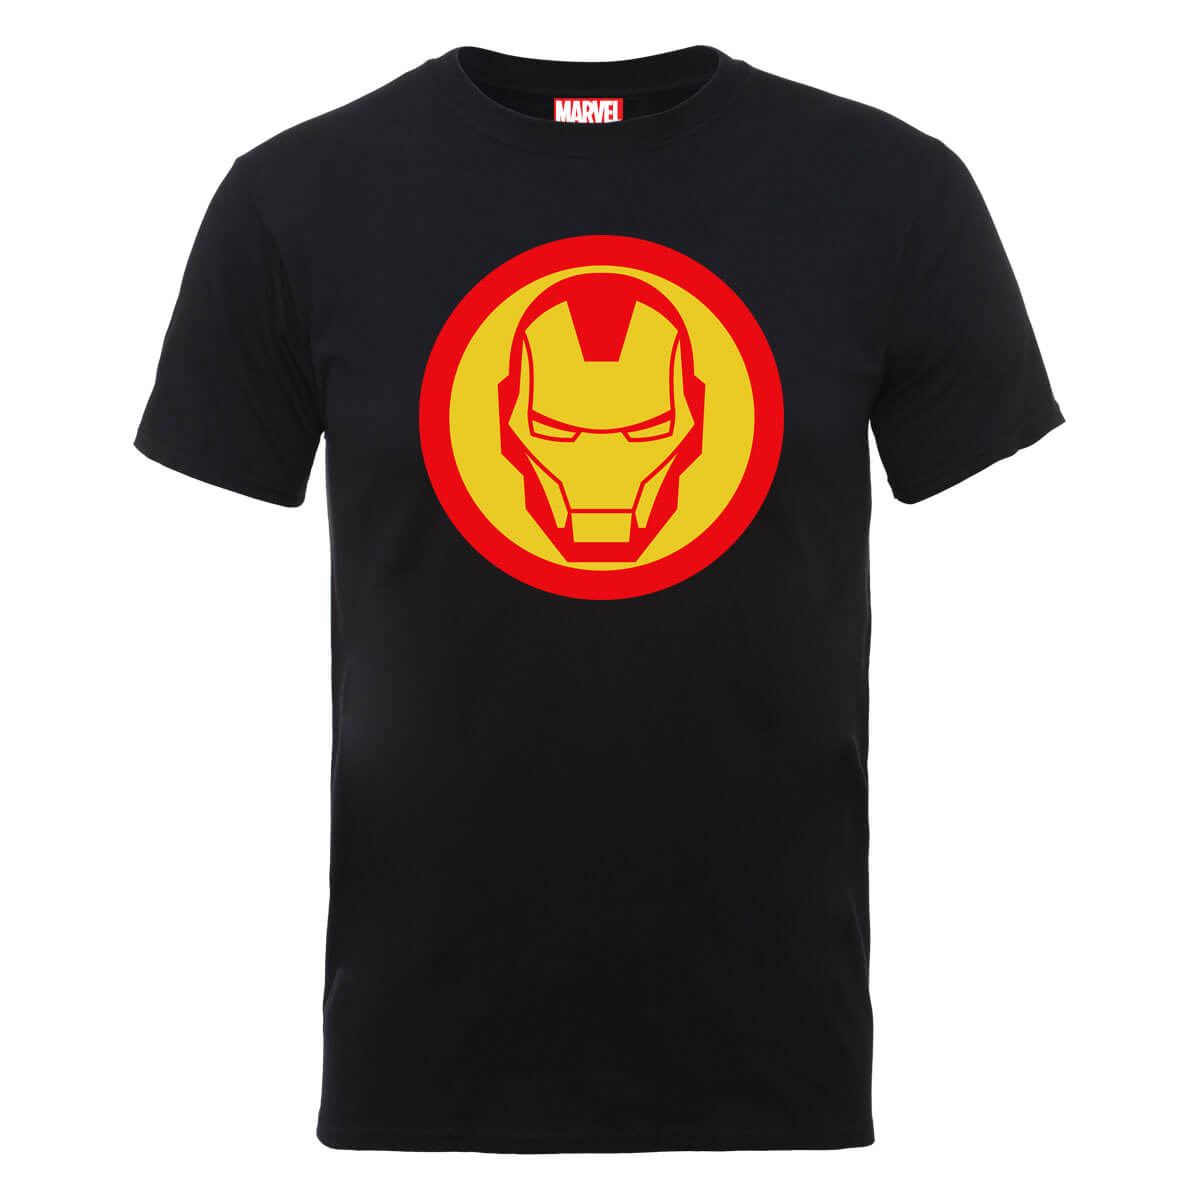 Marvel Avengers Assemble Iron Man T-Shirt - Black Clothing - Zavvi UK